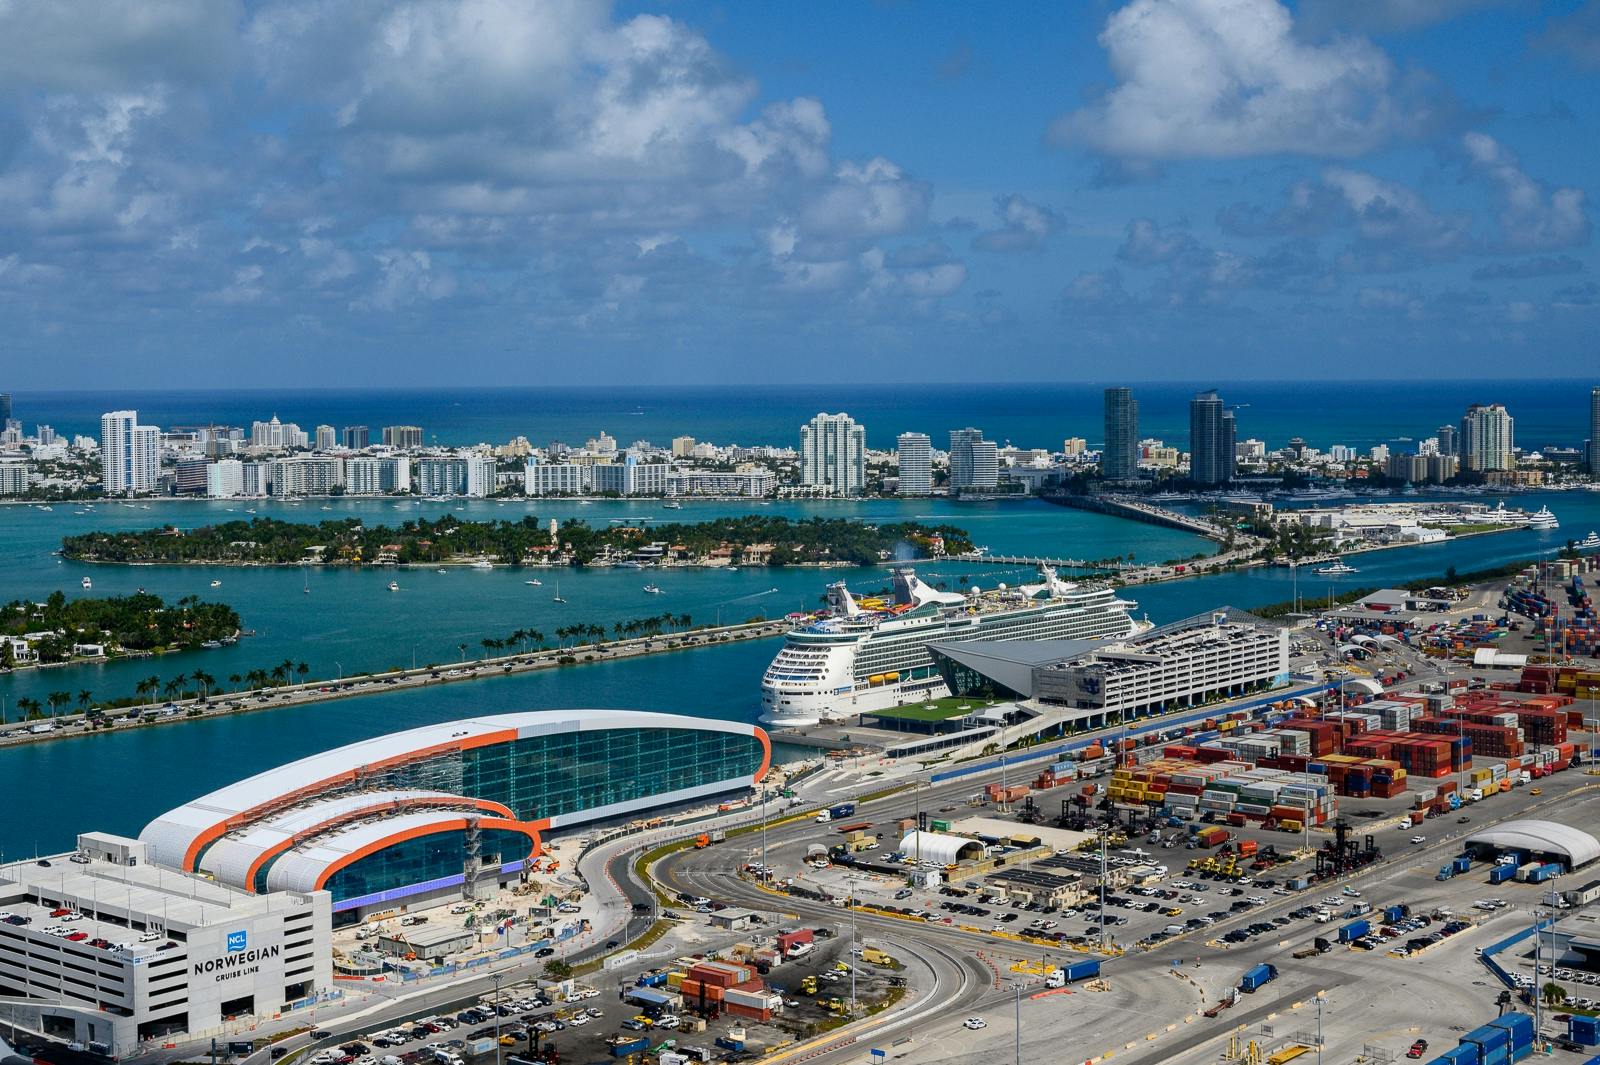 Vistas al mar y a la ciudad: tour en helicóptero de 1 hora desde Fort Lauderdale